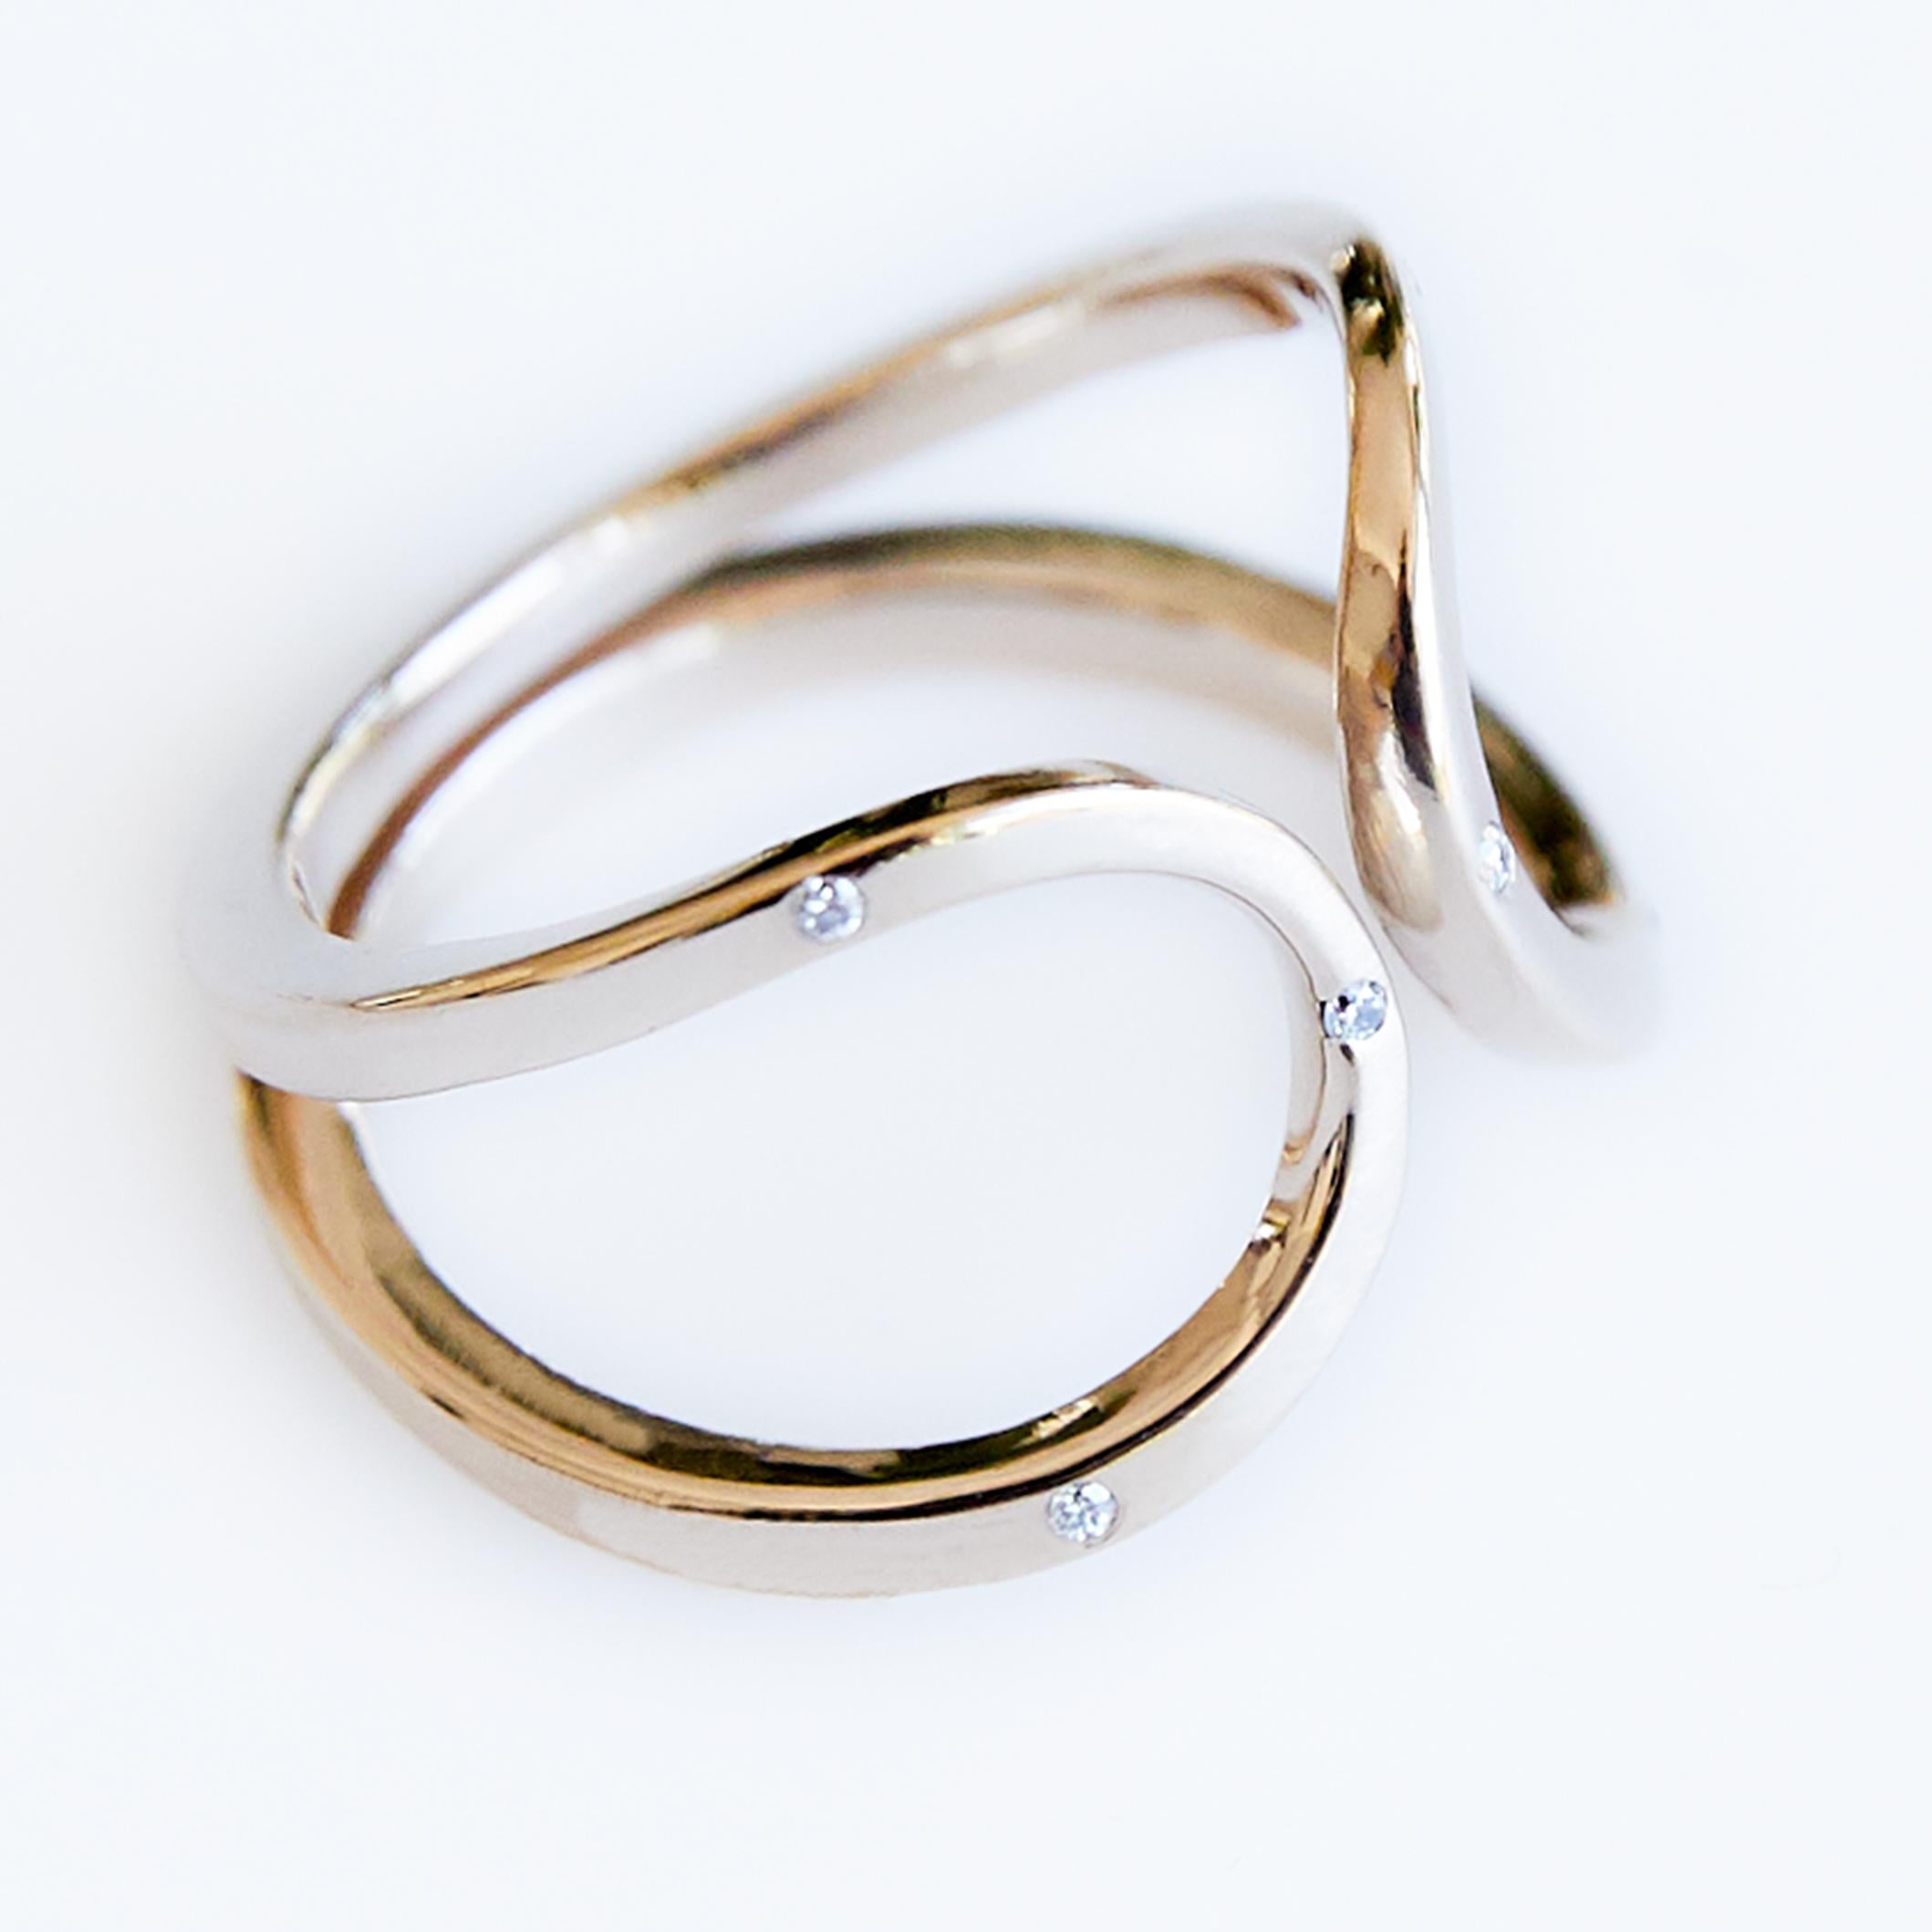 Weißer Diamantring Gold Vermeil Fashion Cocktail Ring Verstellbar J DAUPHIN
J DAUPHIN 